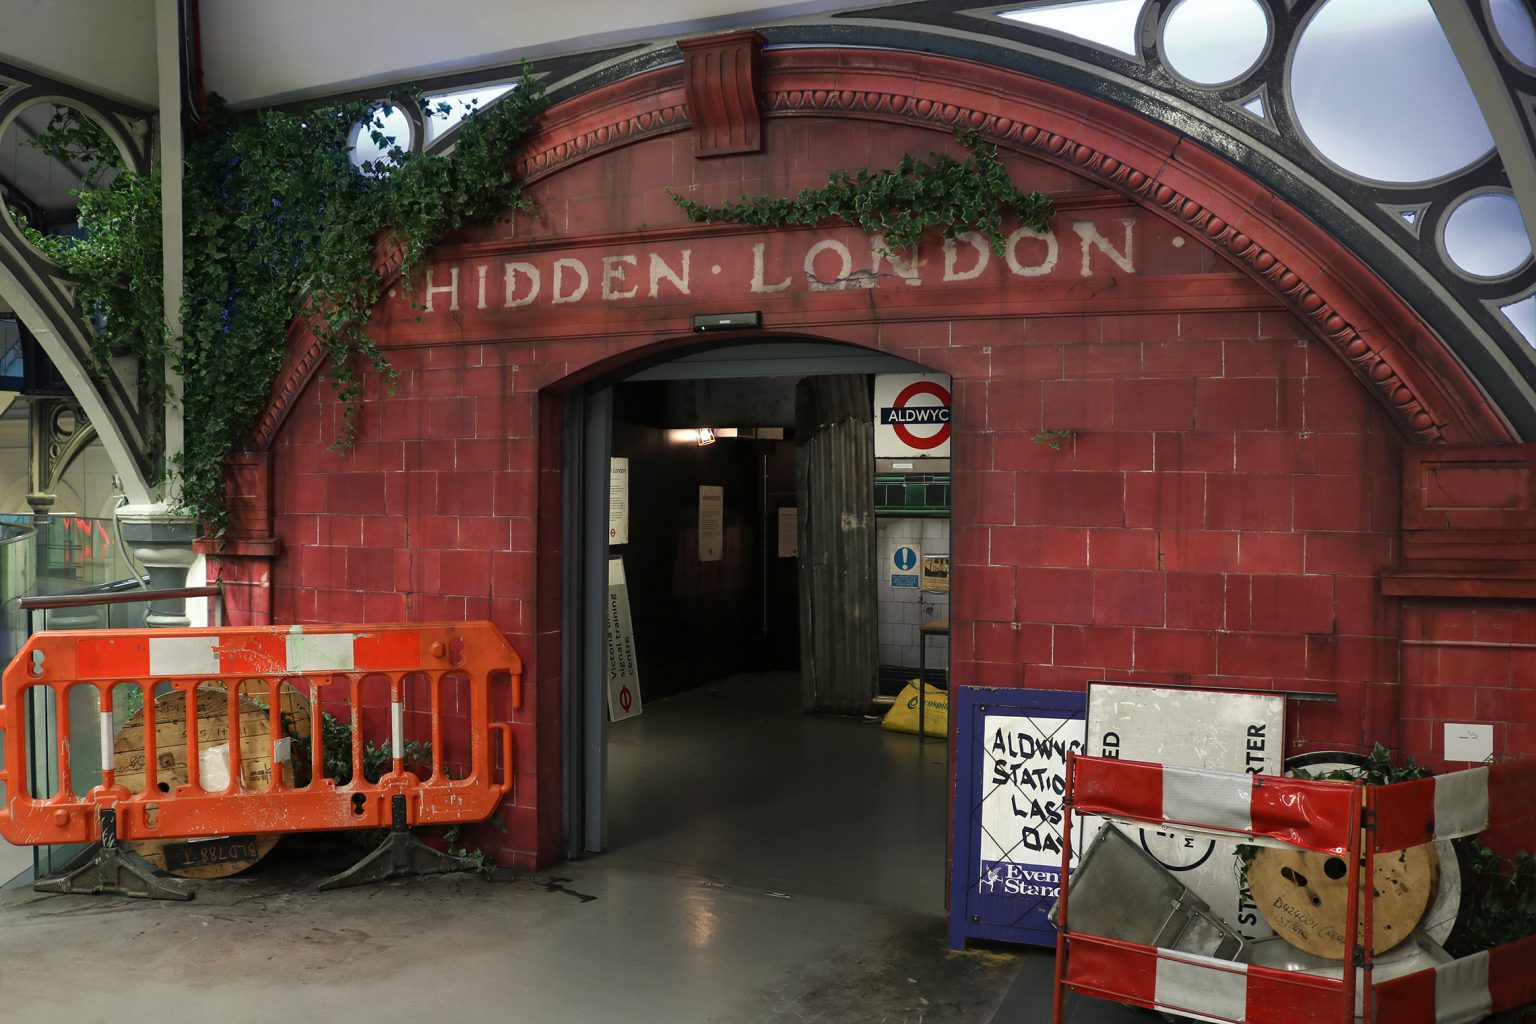 transport museum hidden london tour